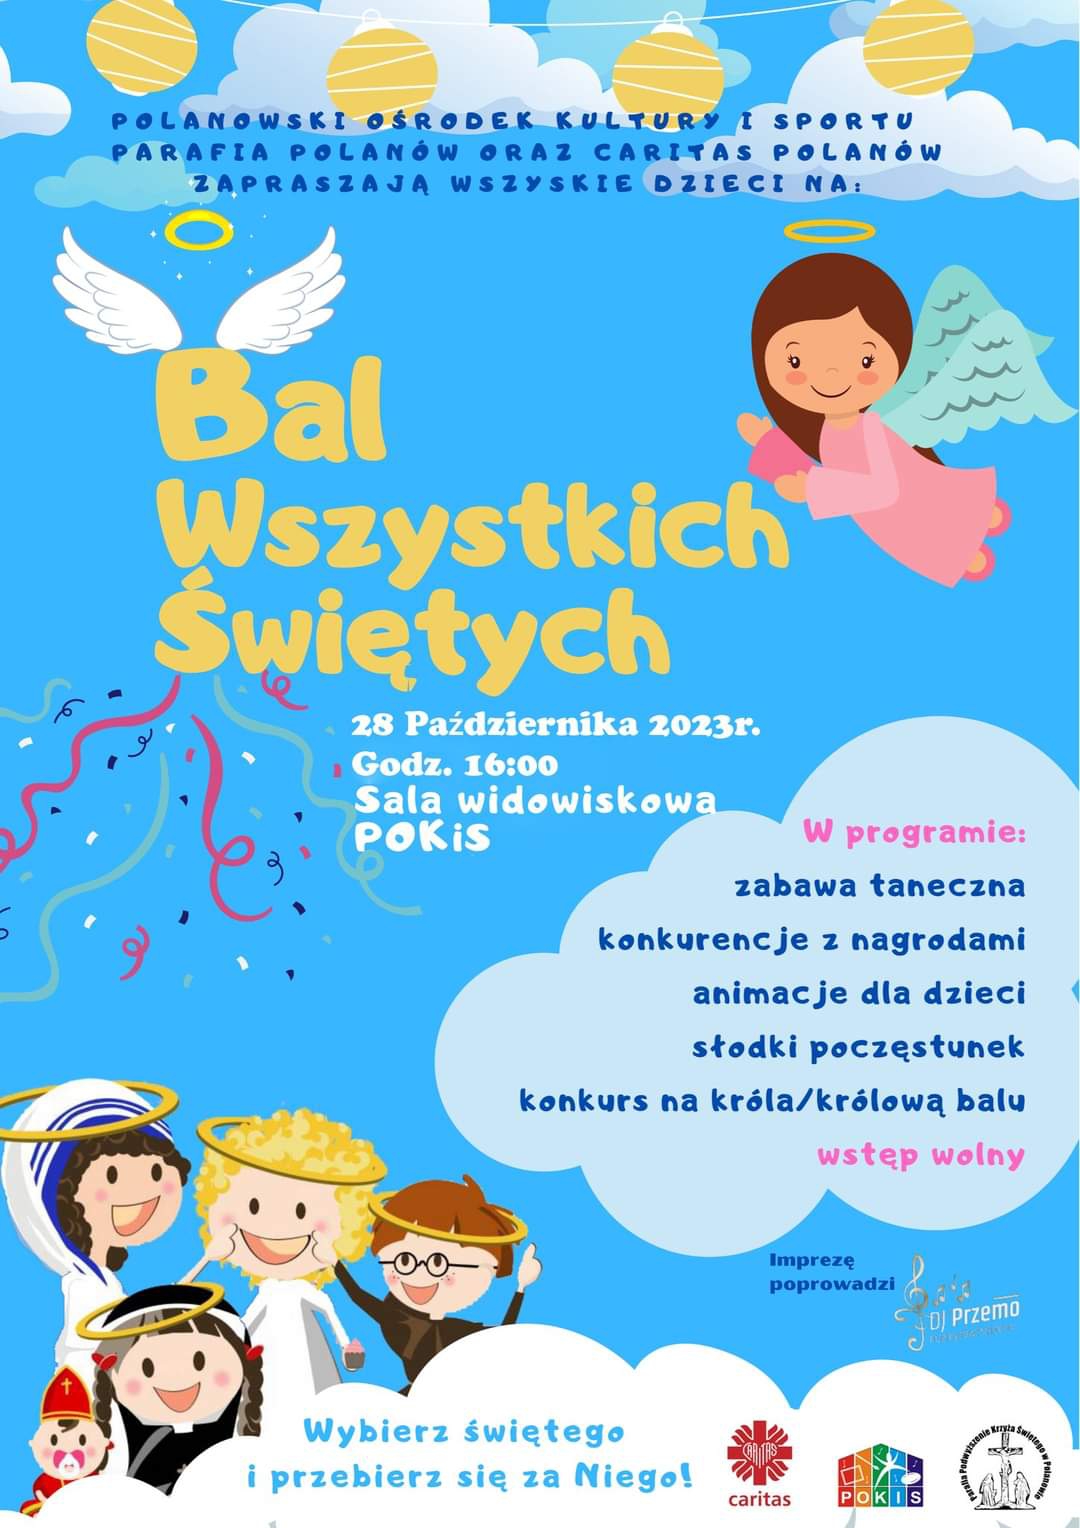 Plakat z zaproszeniem na bal wszystkich świętych w Polanowie 28 października 2023